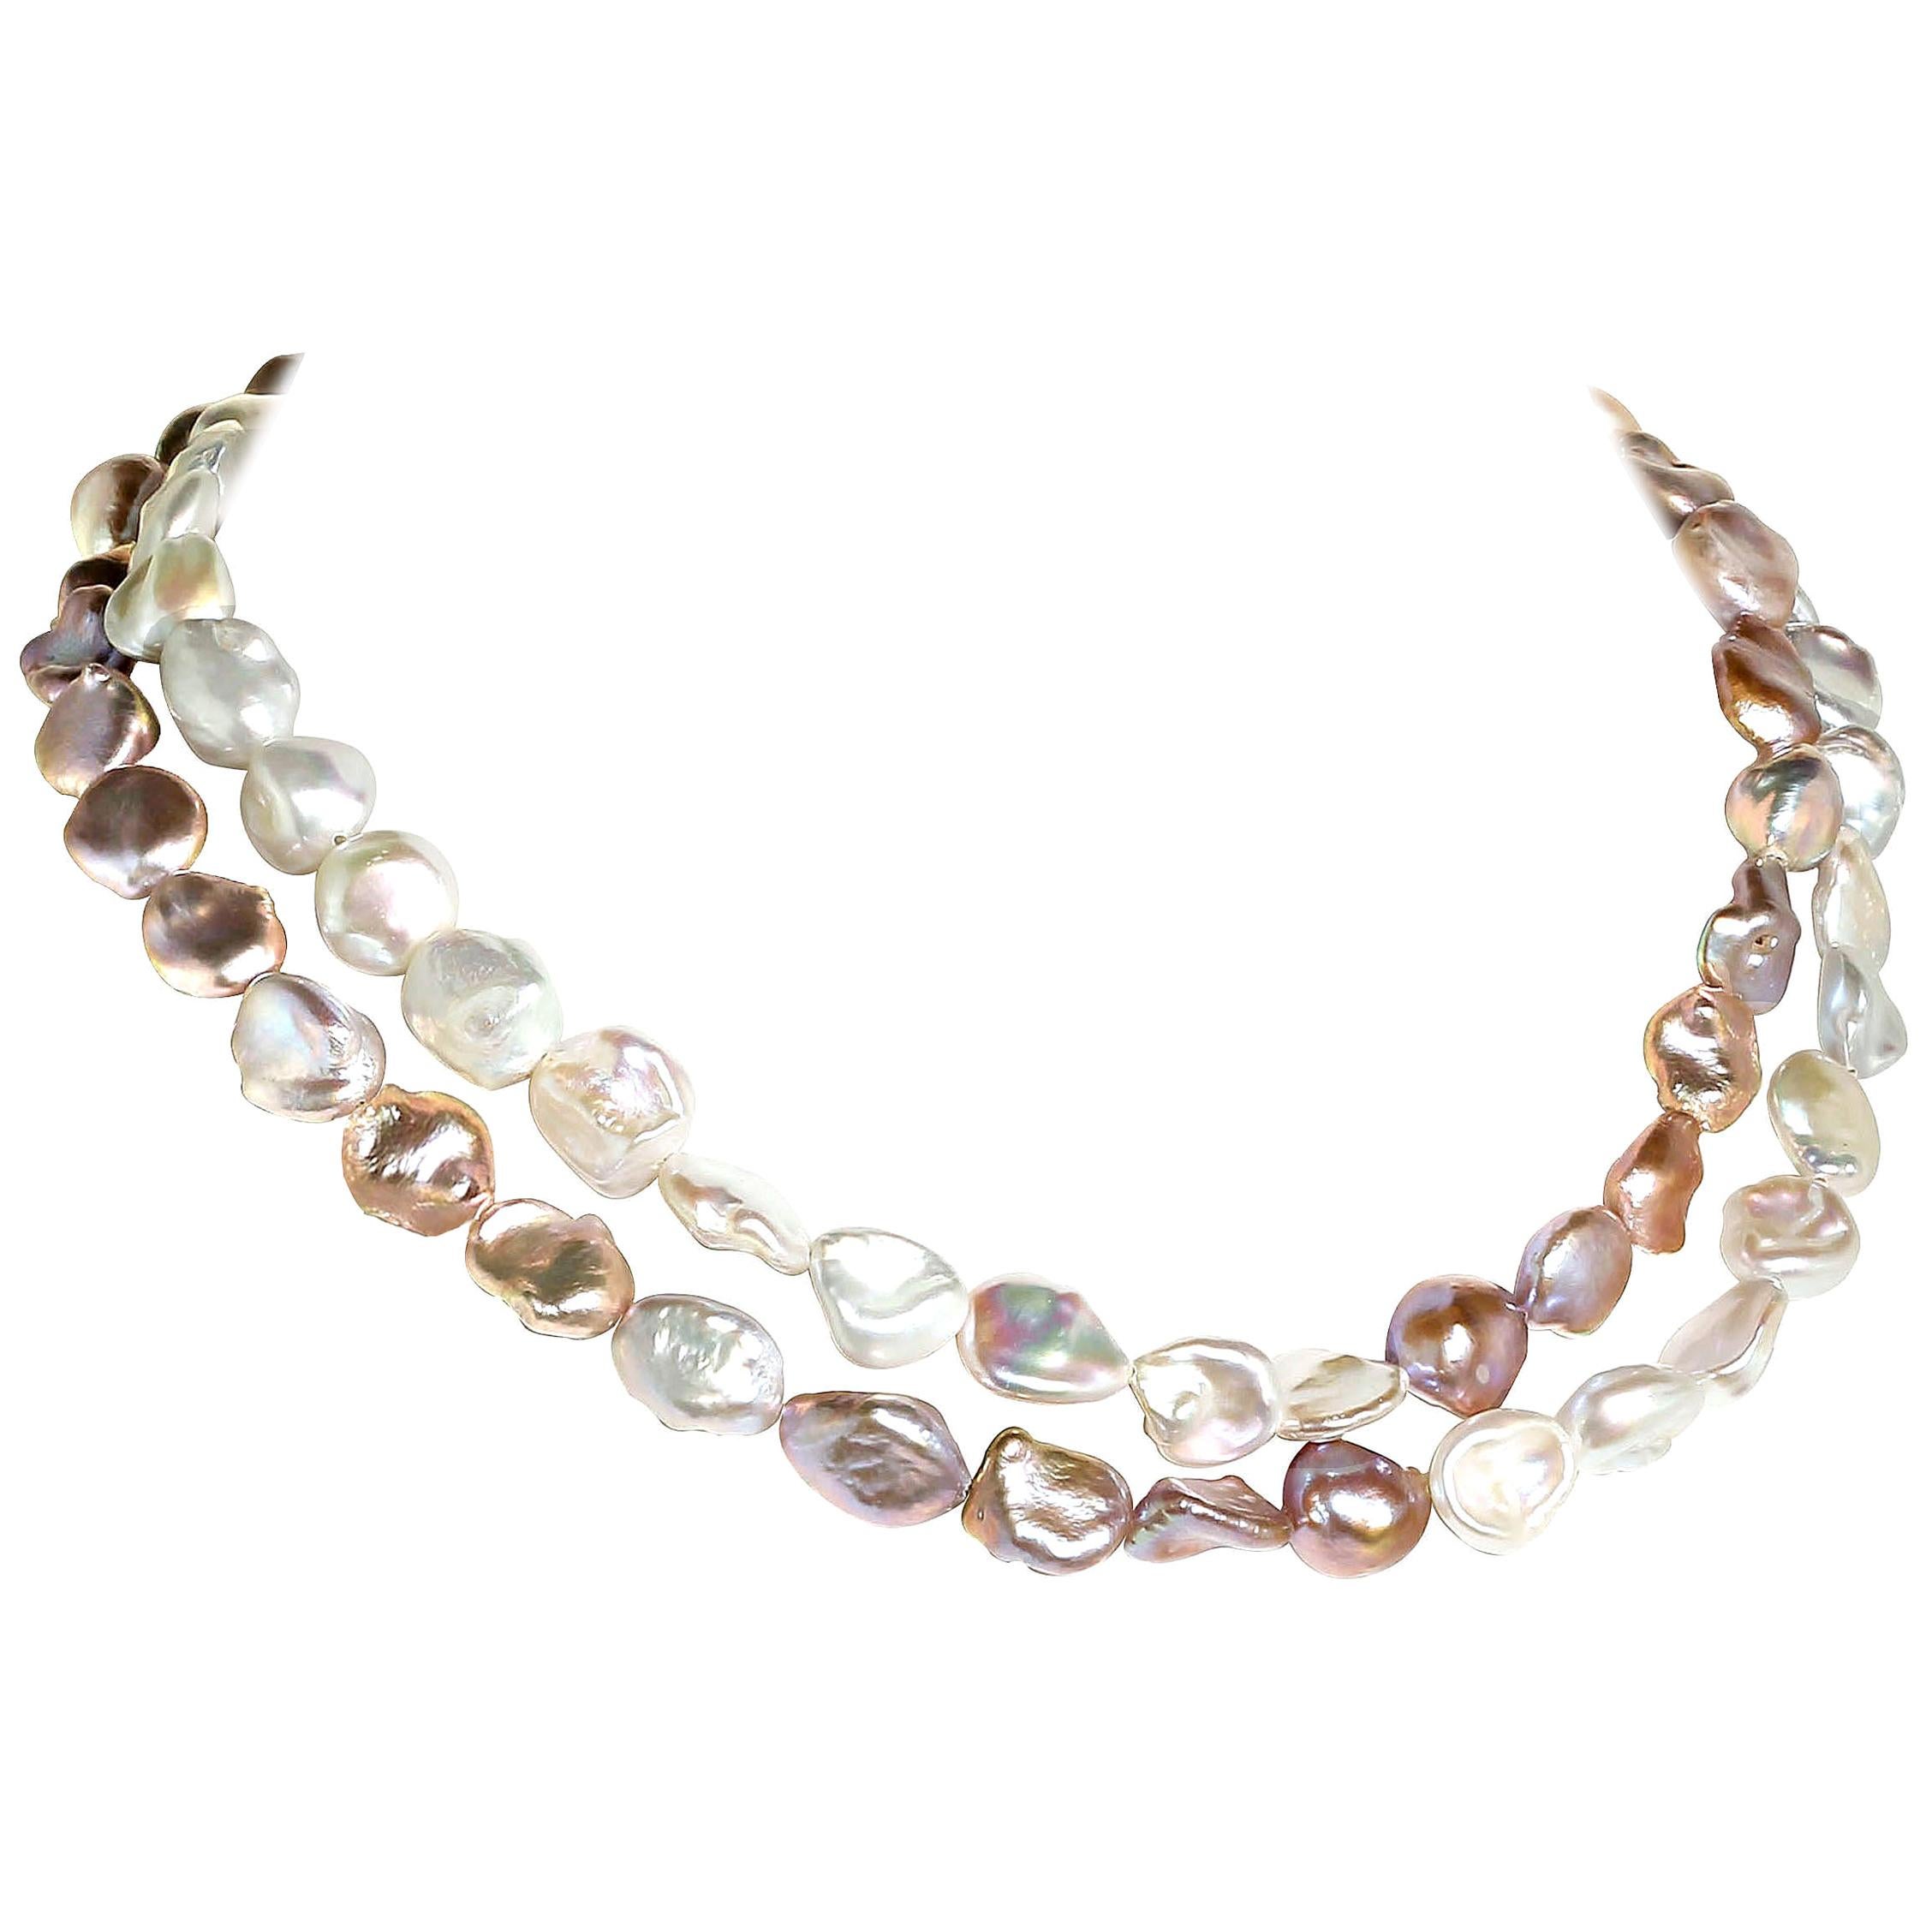 Halskette, AJD 15 Zoll, zweireihig, Perlen in Silber und Wei, Kreuz ber Muster  (Kunsthandwerker*in) im Angebot